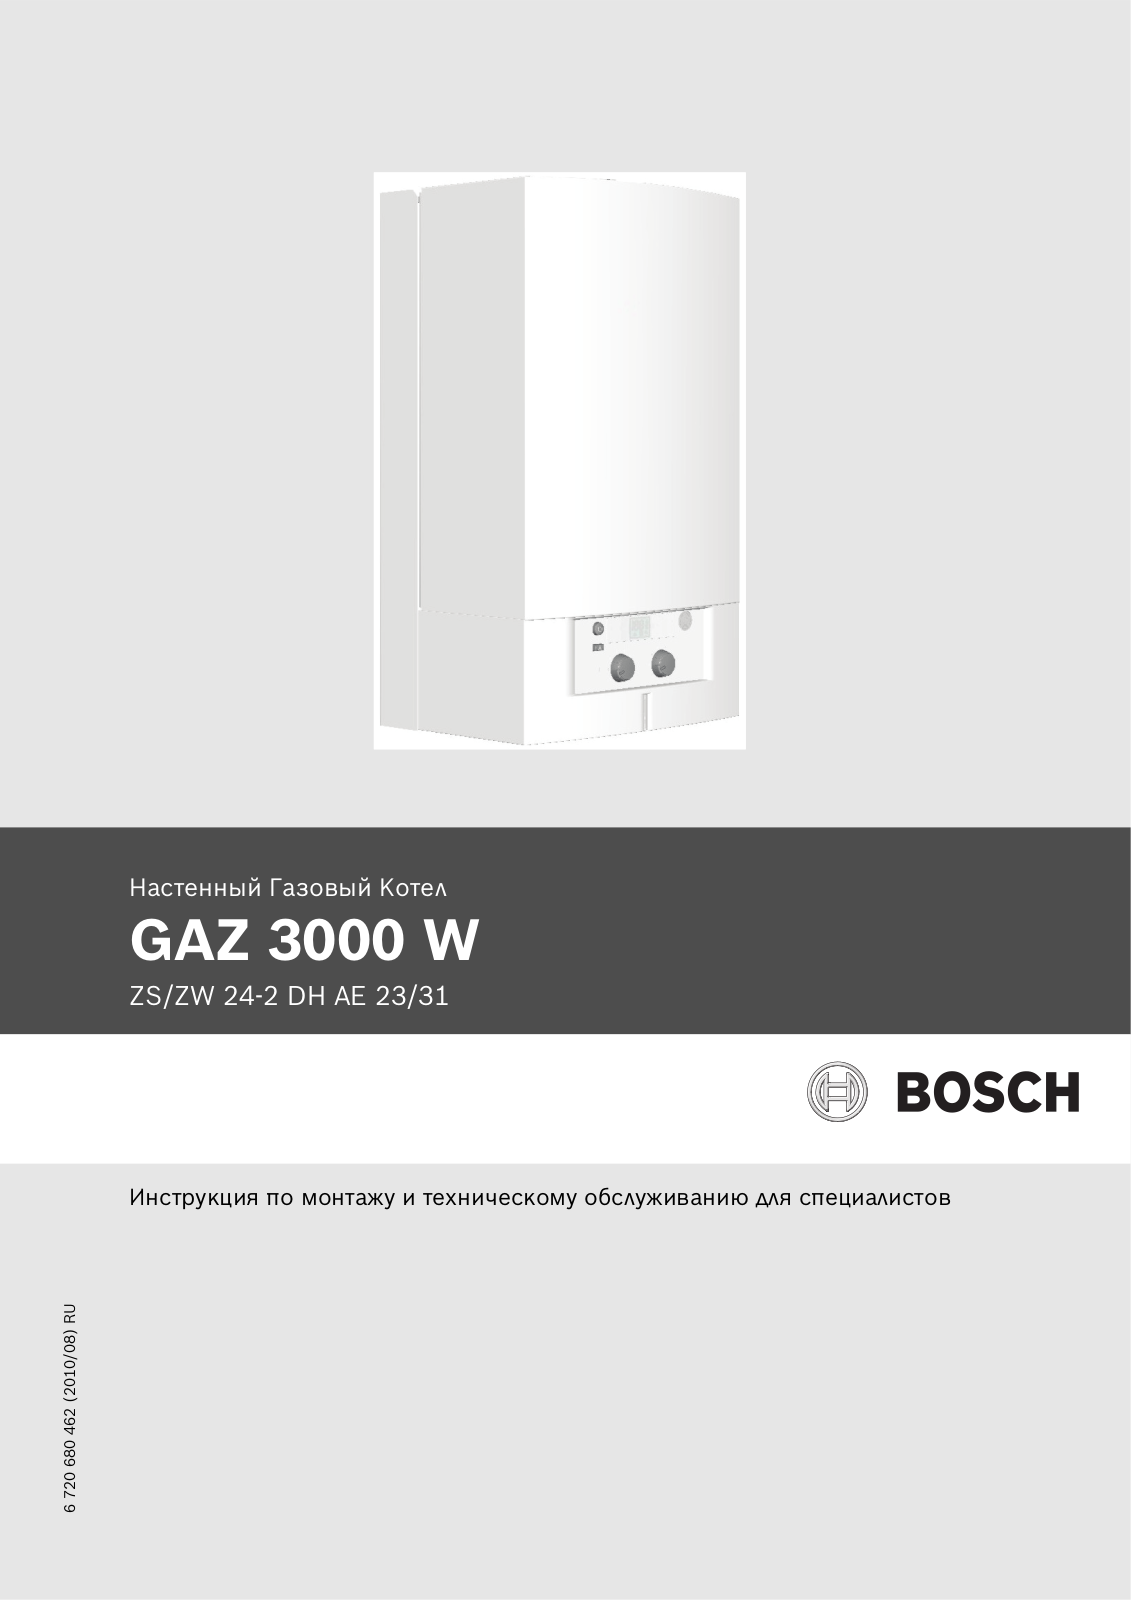 BOSCH Gaz 3000 W User Manual